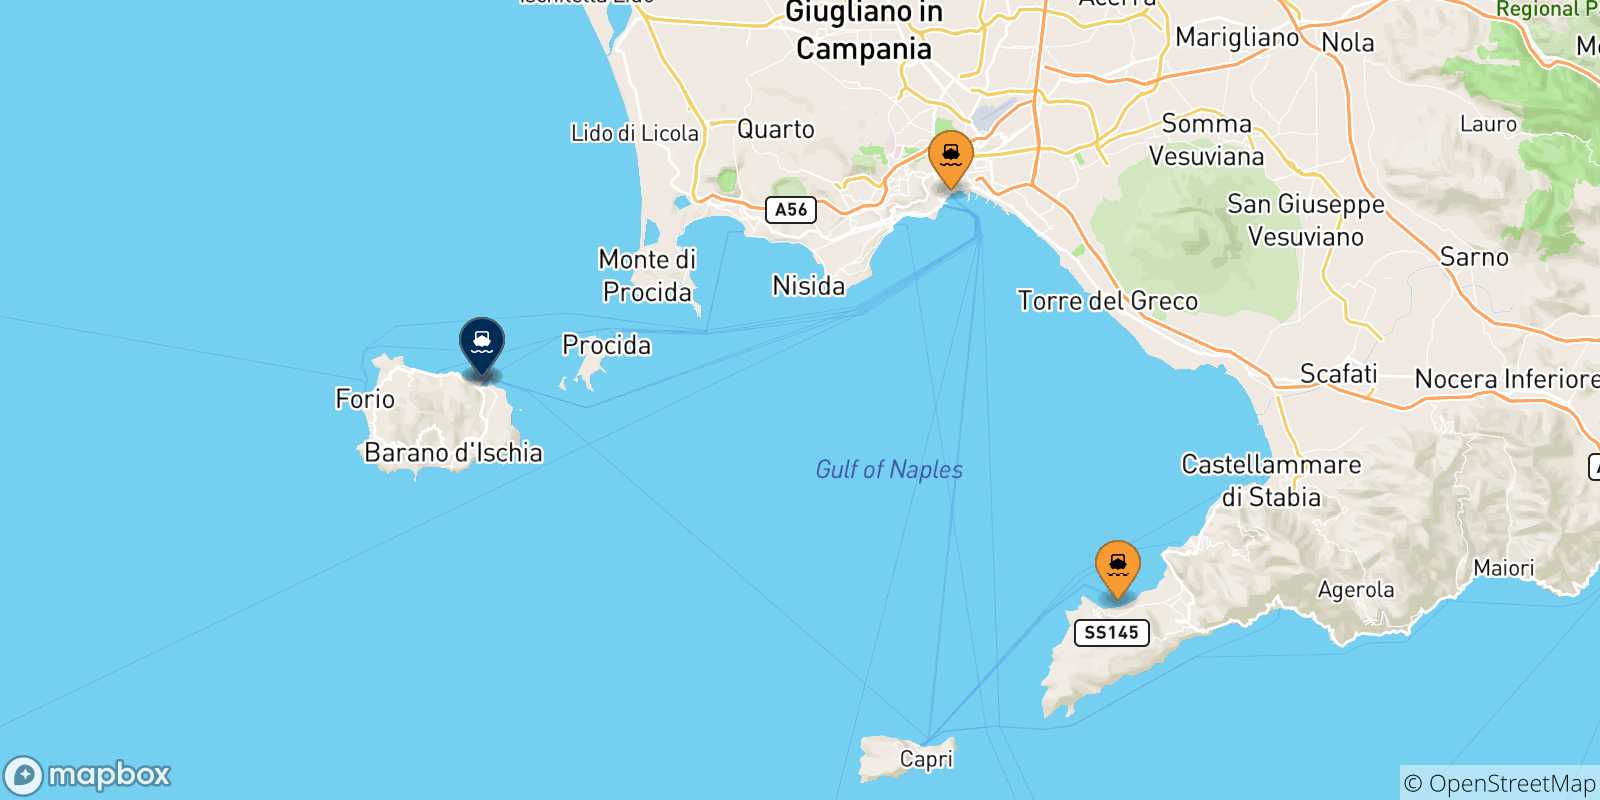 Mappa delle possibili rotte tra l'Italia e Ischia